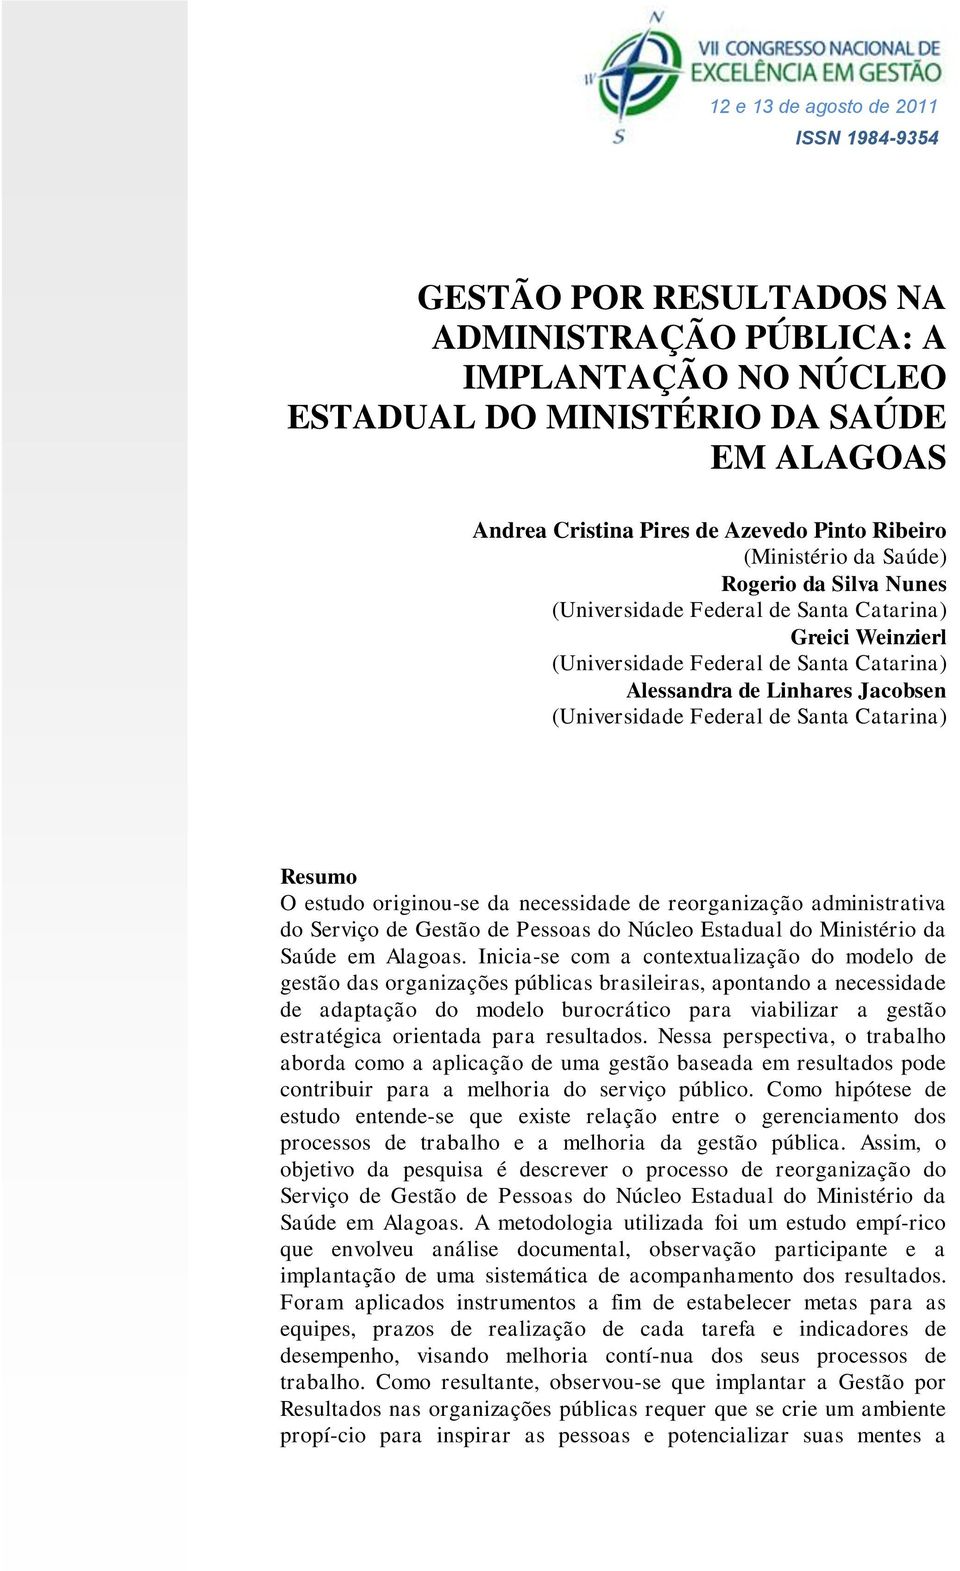 Federal de Santa Catarina) Resumo O estudo originou-se da necessidade de reorganização administrativa do Serviço de Gestão de Pessoas do Núcleo Estadual do Ministério da Saúde em Alagoas.